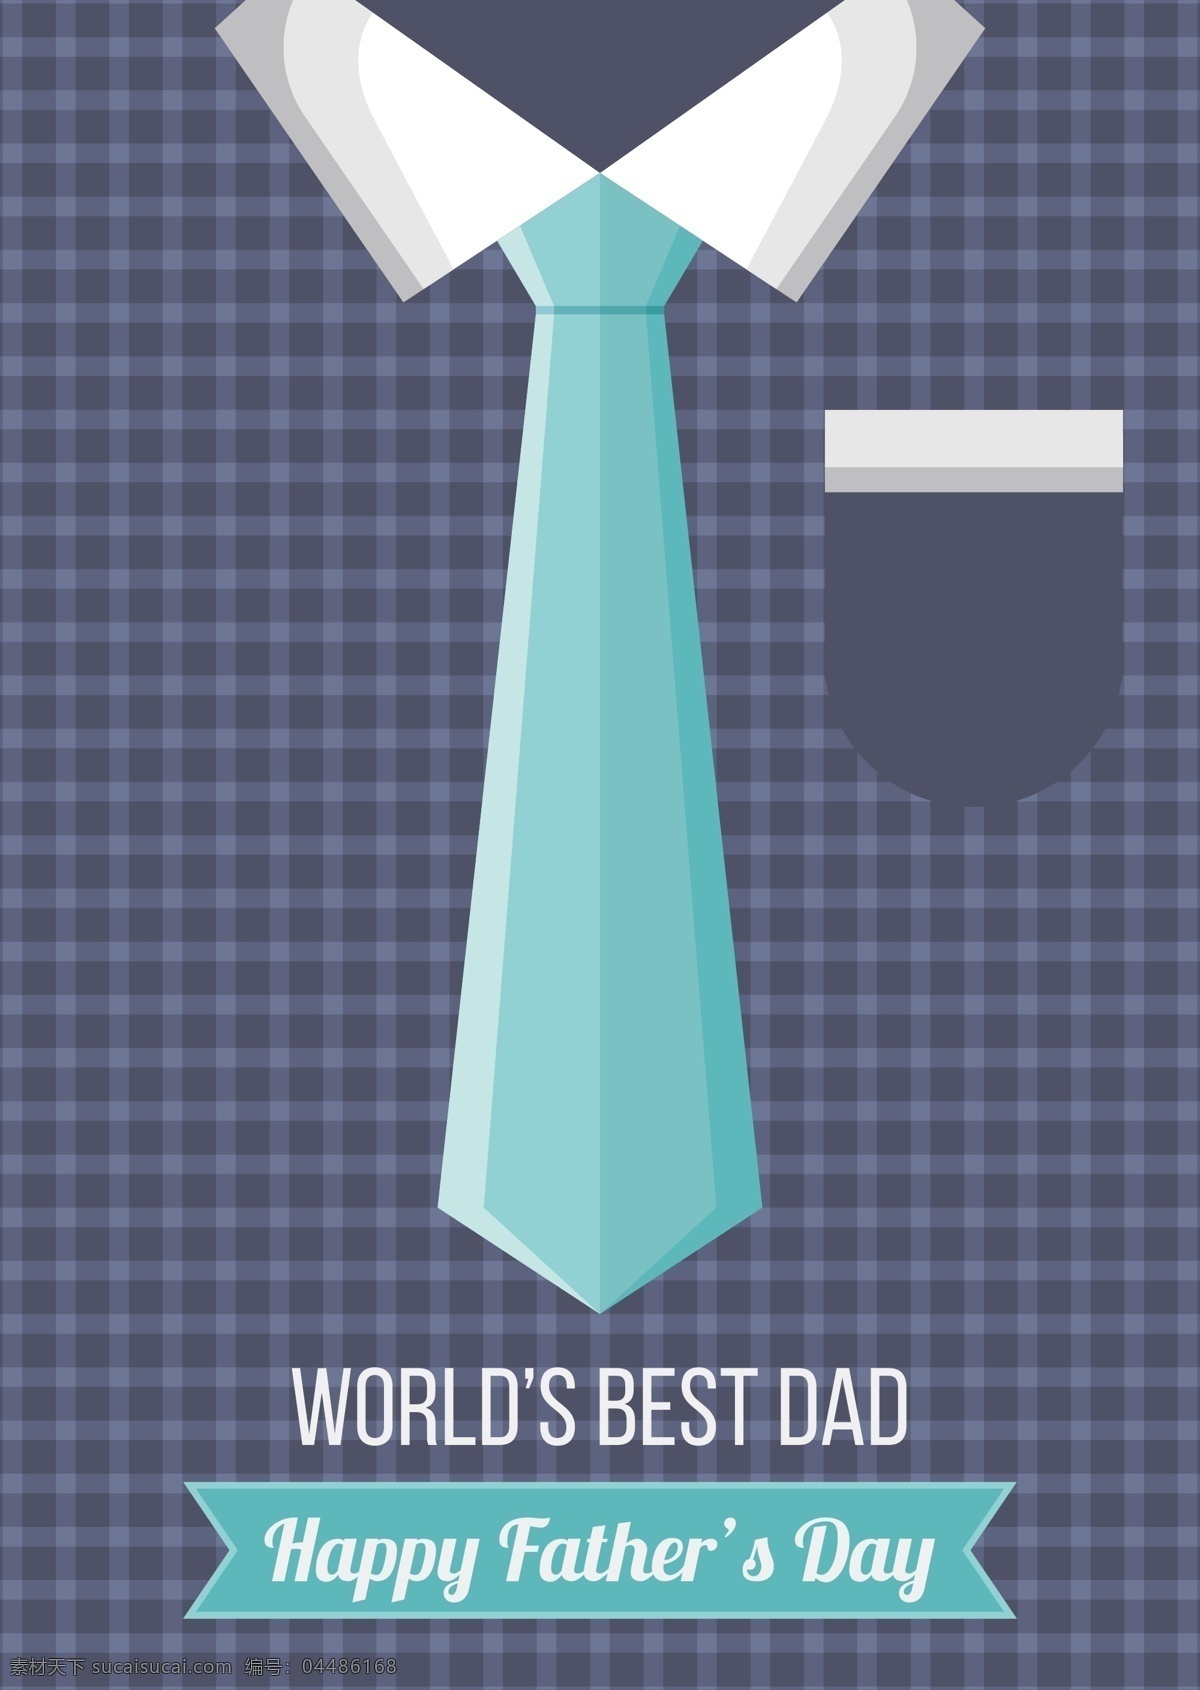 蓝色 格子 衬衣 父亲节 元素 父亲节素材 父亲节设计